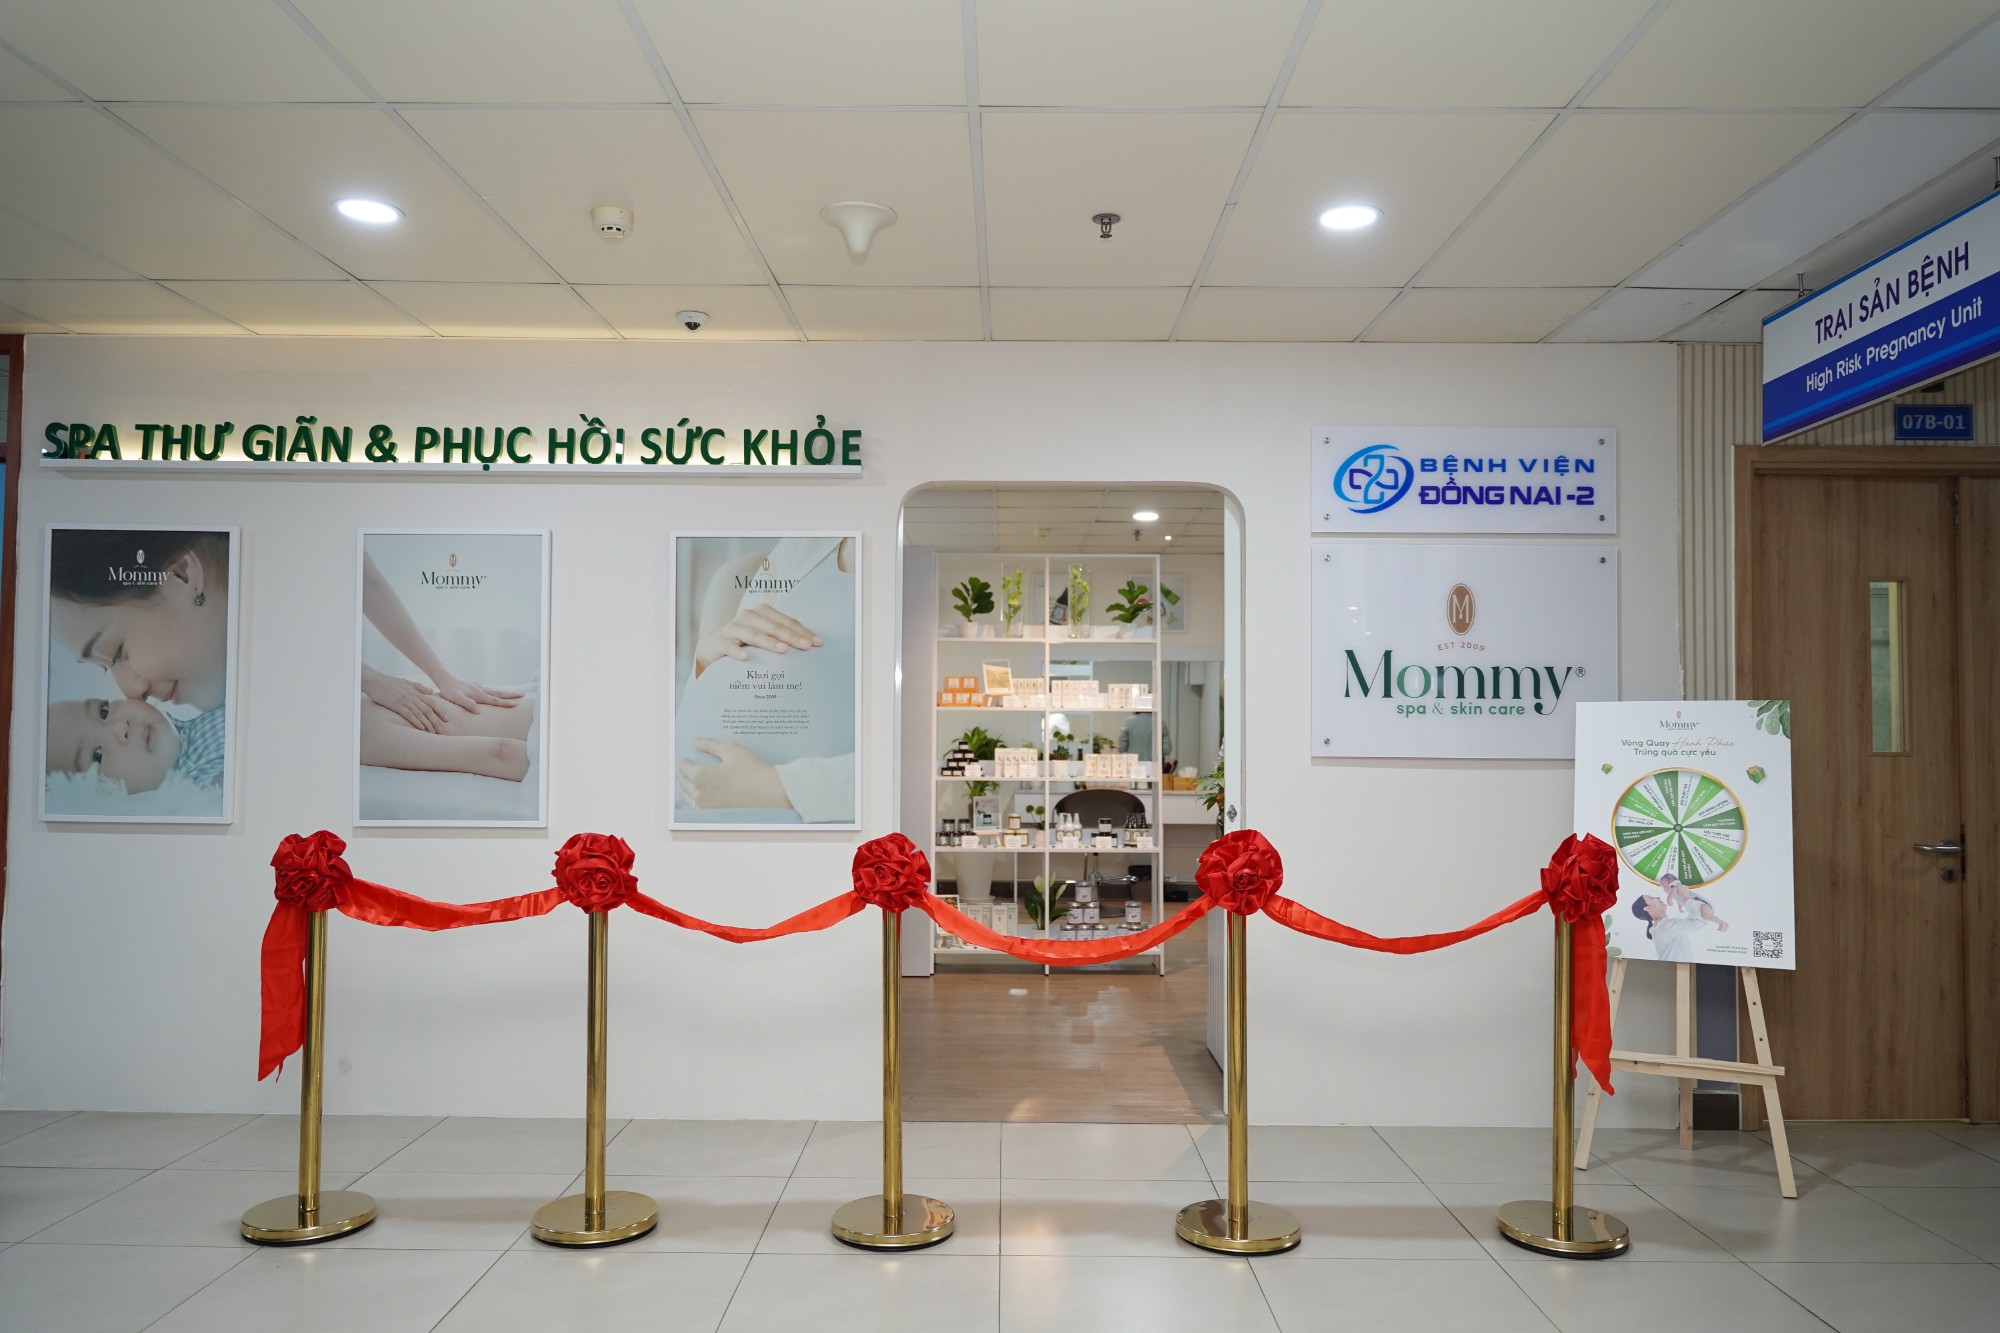 Mommy Spa & Skin Care tại Bệnh Viện Đồng Nai - 2 (Tp. Biên Hòa)